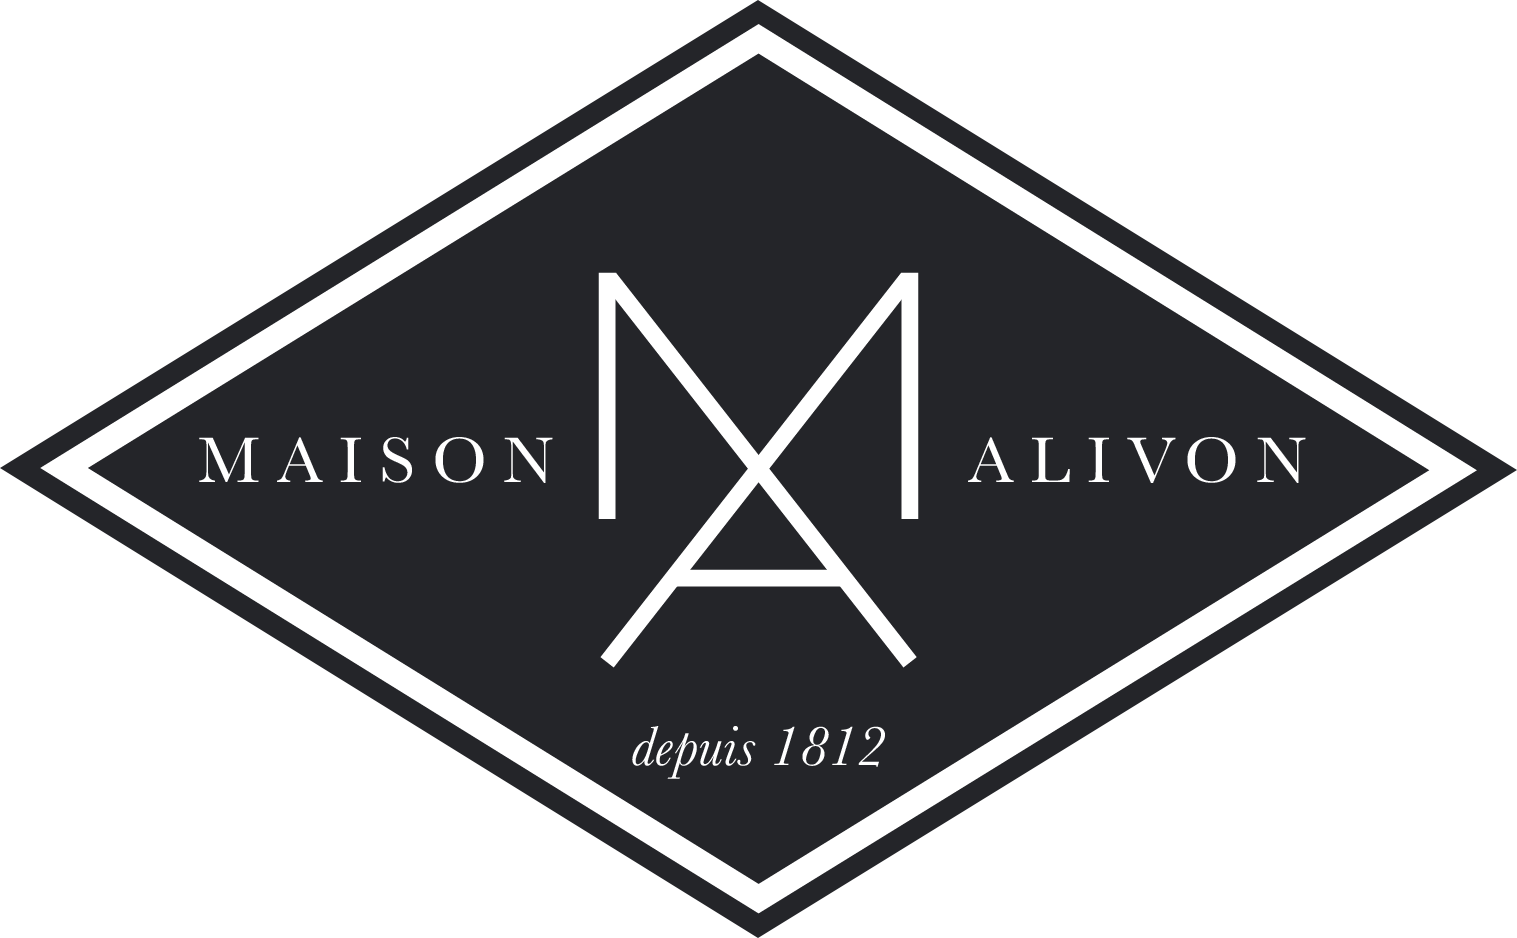 Maison Alivon